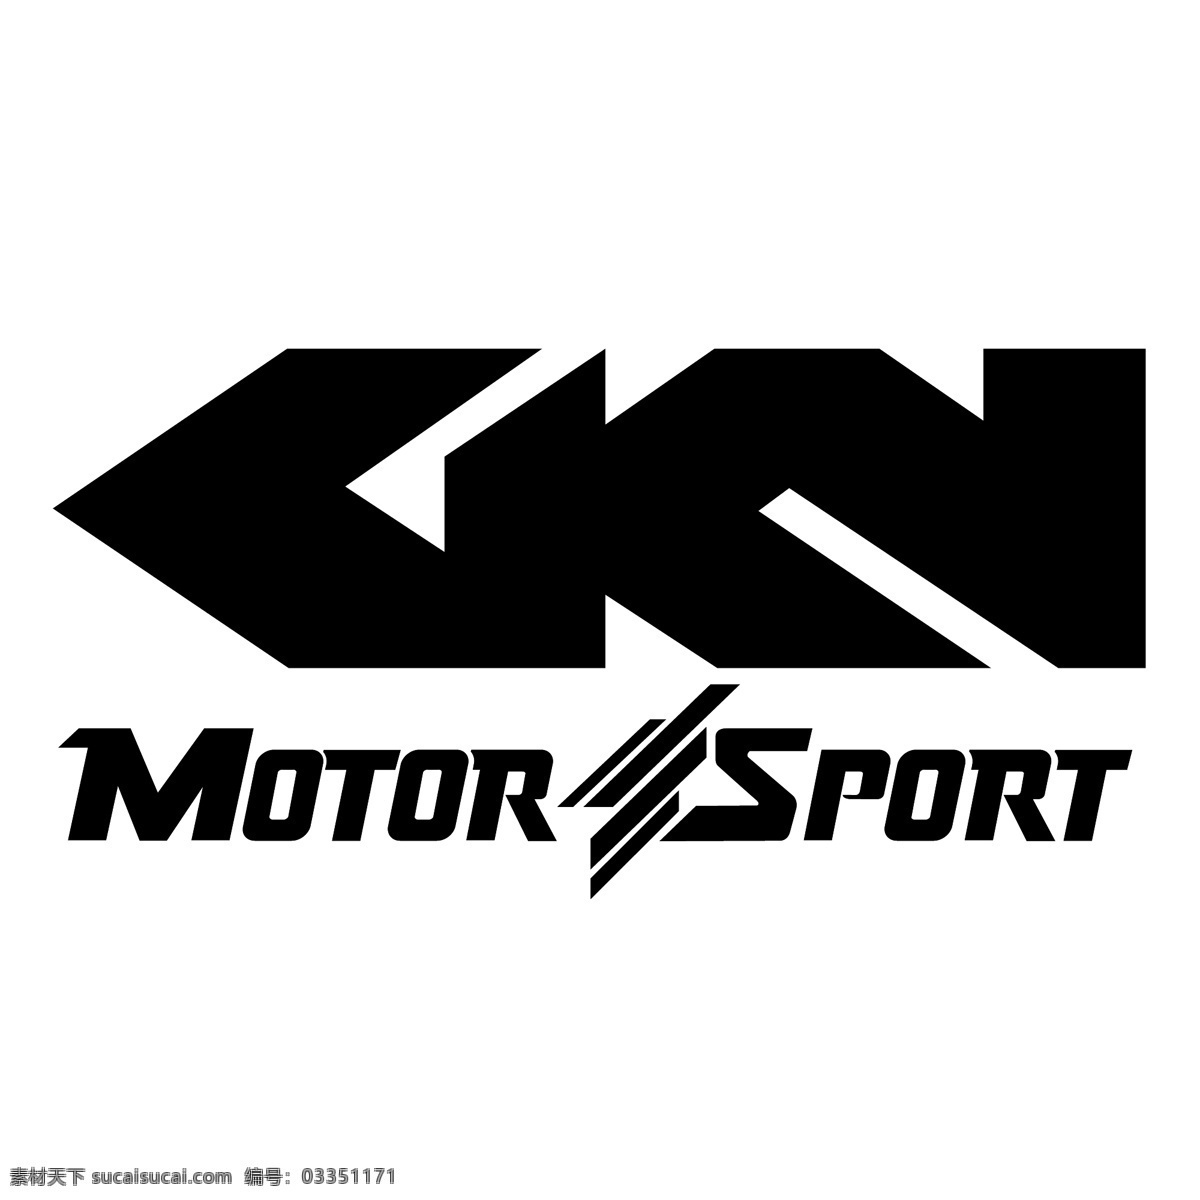 gkn赛车 赛车 gkn gkn的赛车 赛车运动 矢量 免费 矢量图像下载 赛车的设计 赛车标识向量 向量 建筑家居